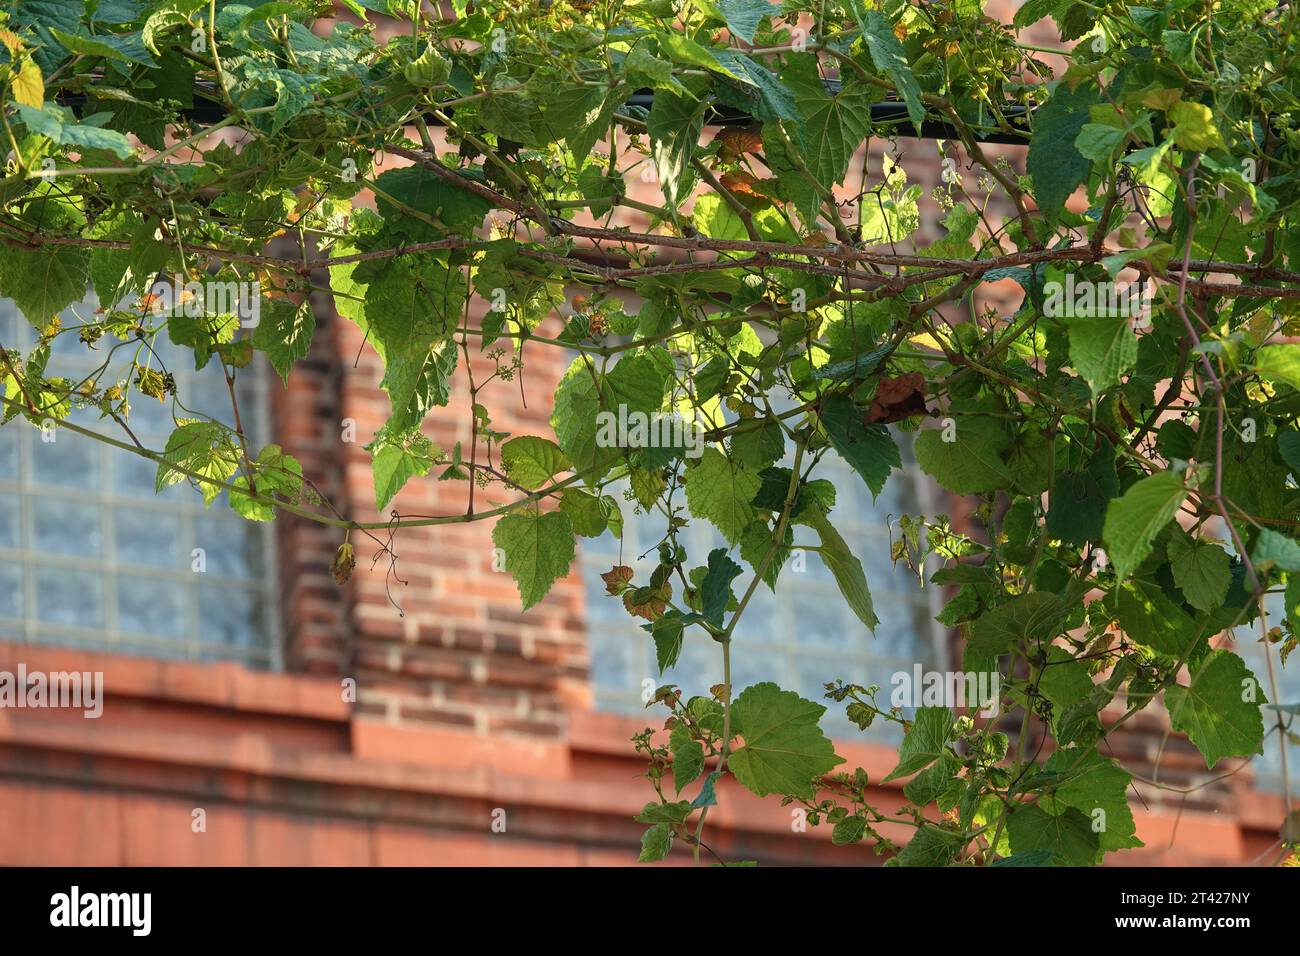 vignes de raisin sauvage accrochées à une ligne téléphonique contre un mur d'usine de briques avec des fenêtres Banque D'Images